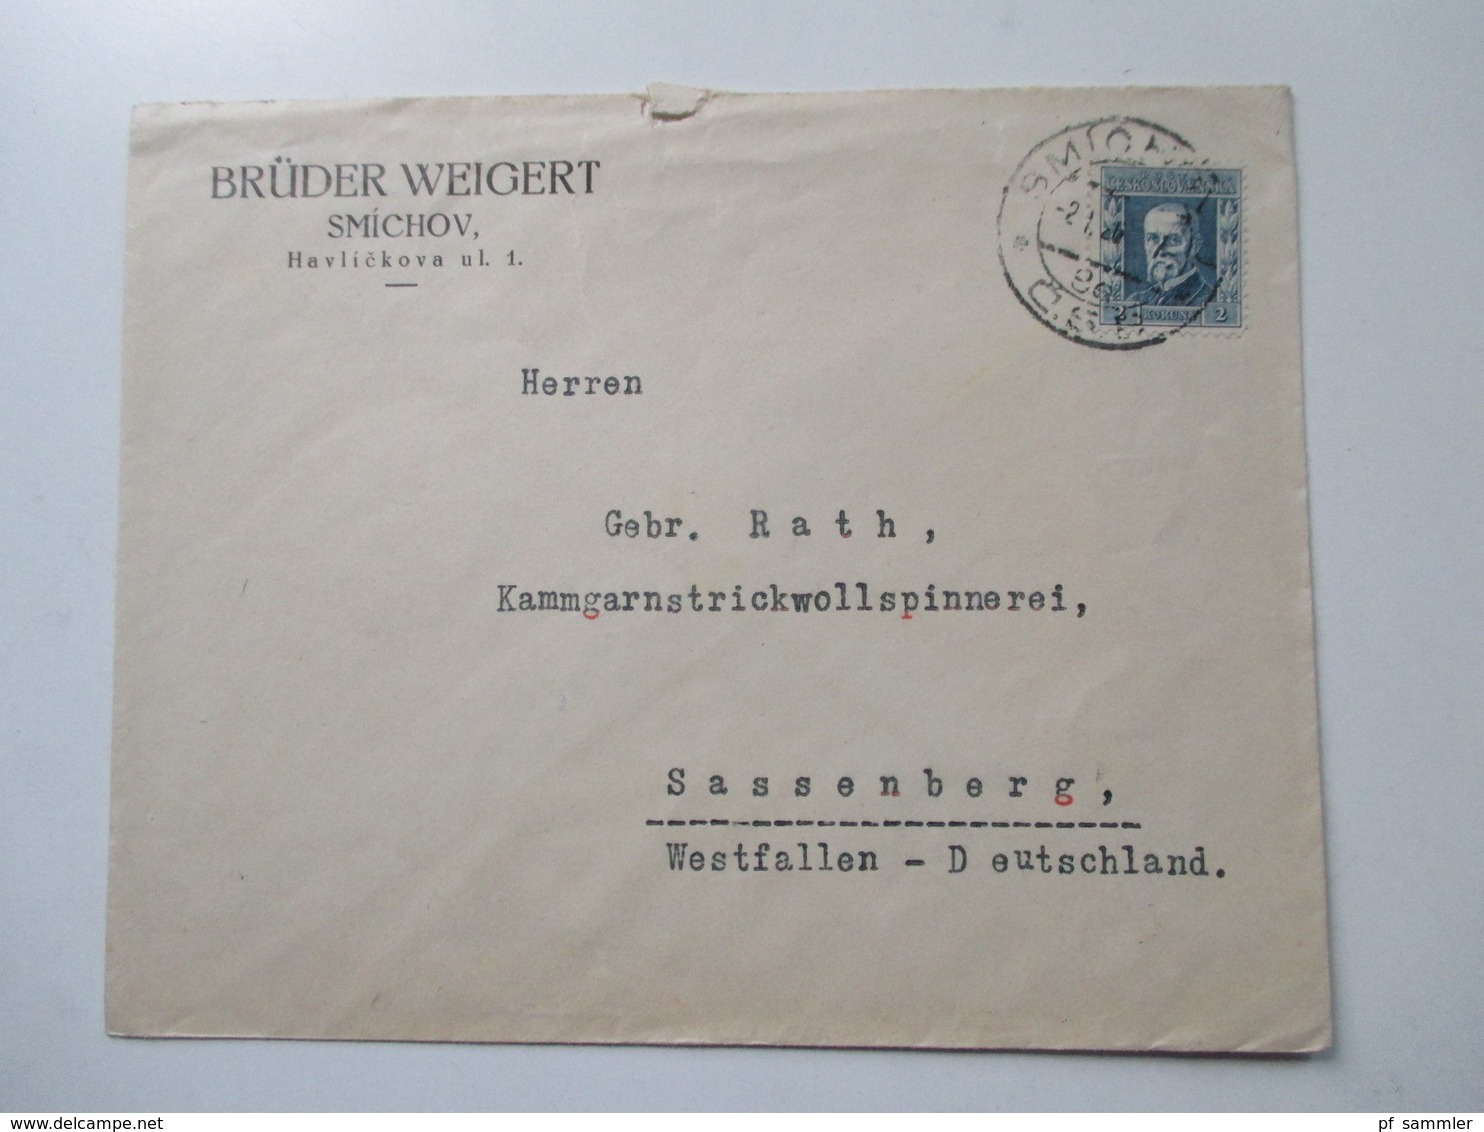 Tschechoslowakei Belegeposten 1920er Jahre. R-Briefe / Express usw. 21 Stück. Sehr interessant!Firmenkorrespondenz